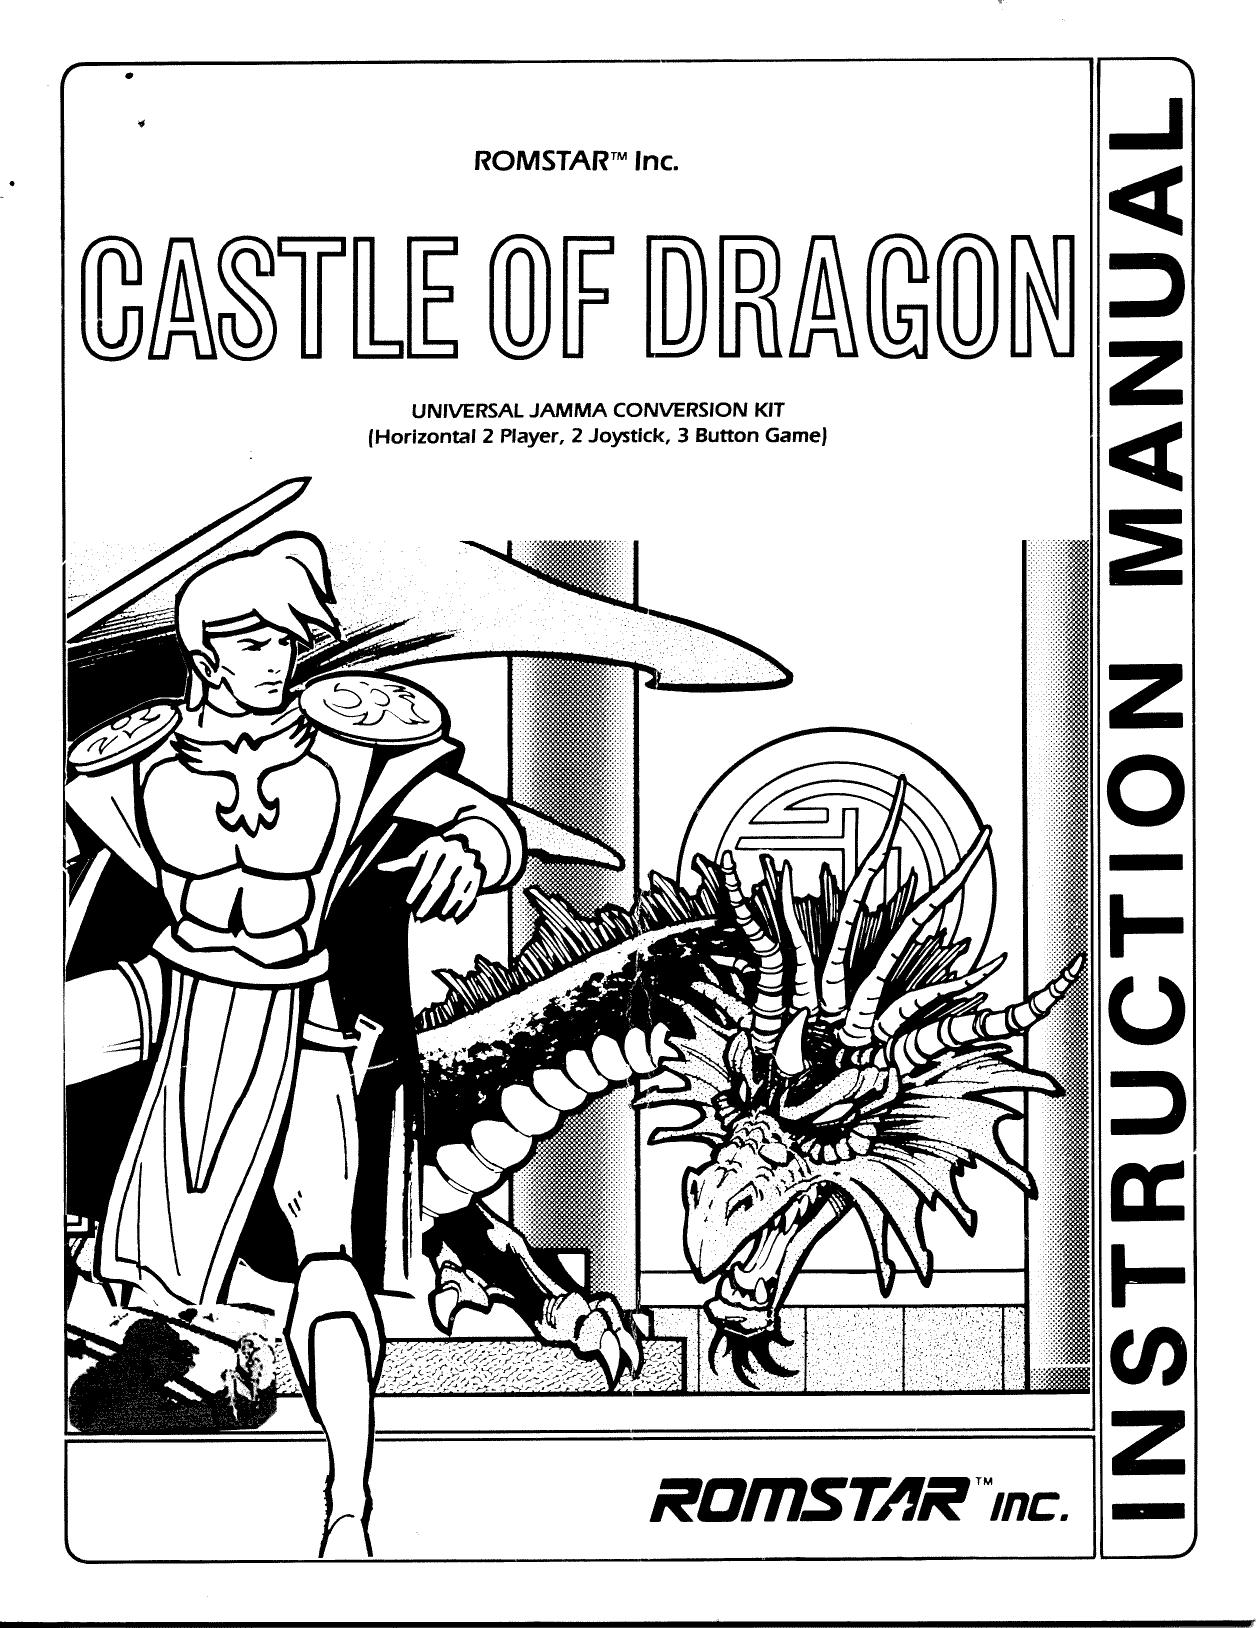 CastleofDragon Manual